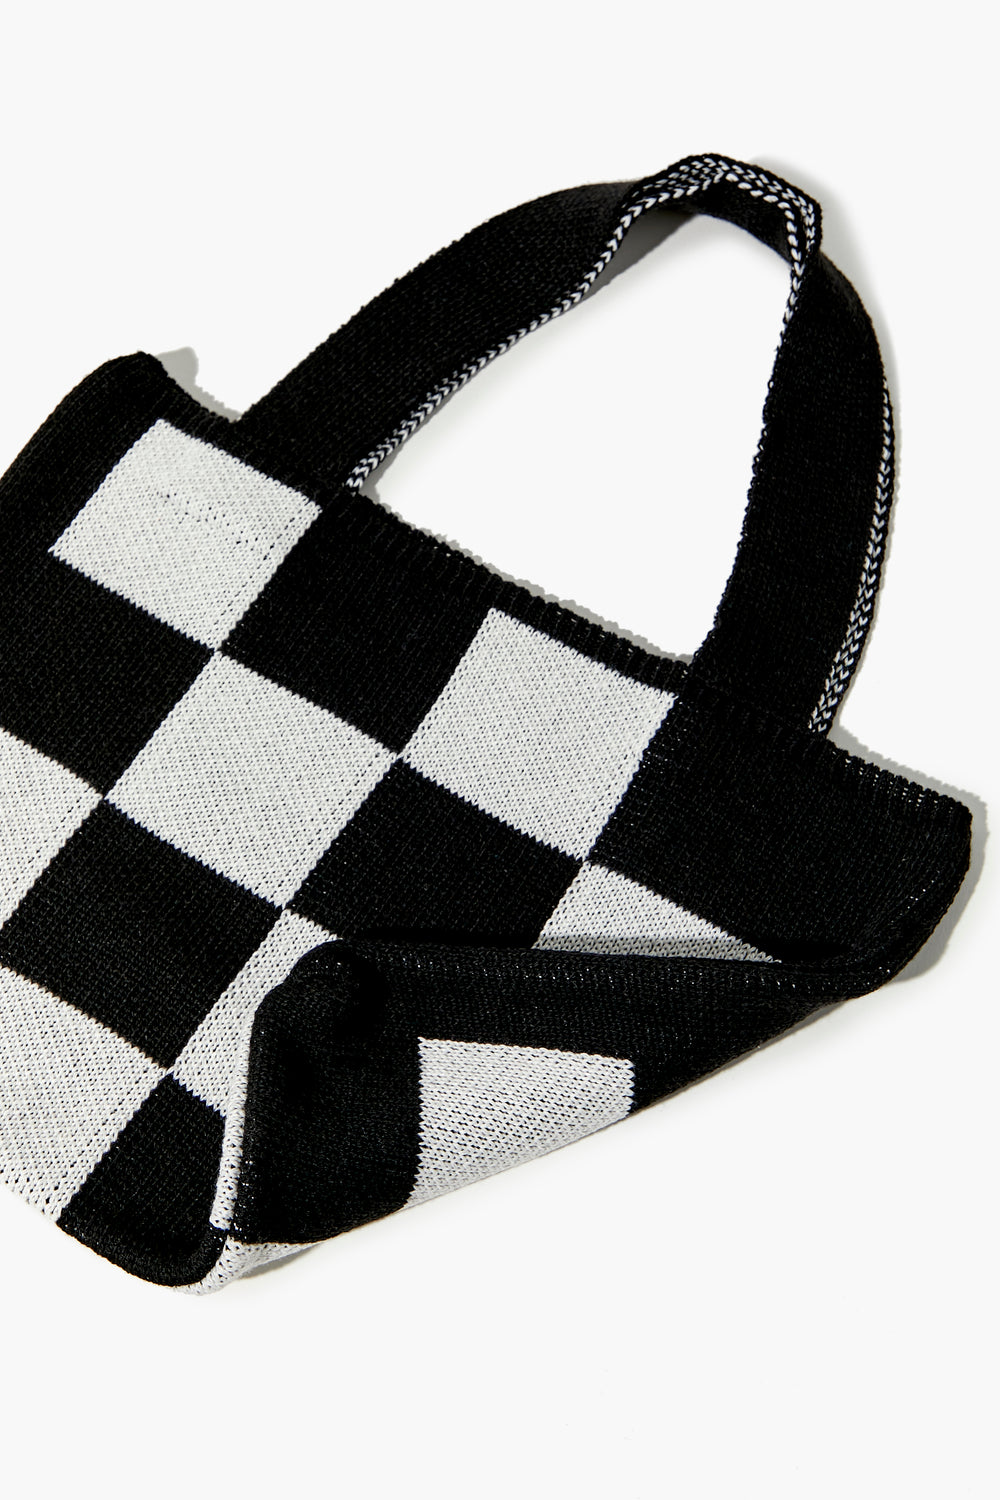 Checkered Knit Handbag Black